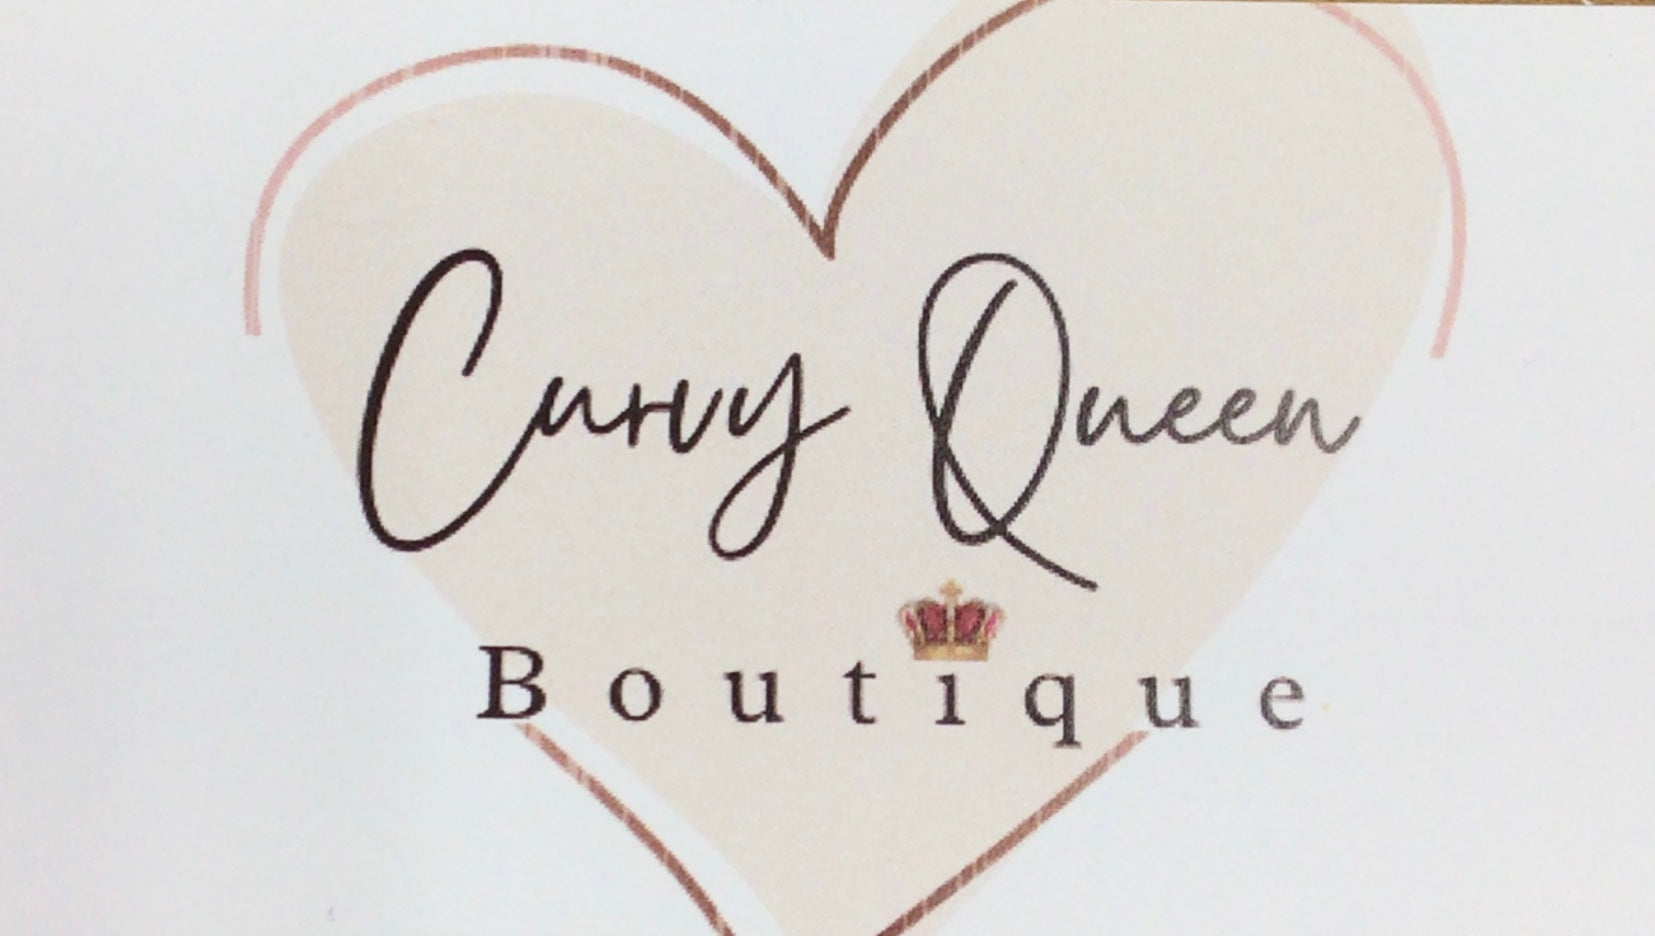 Idaho Curvy Queen Boutique